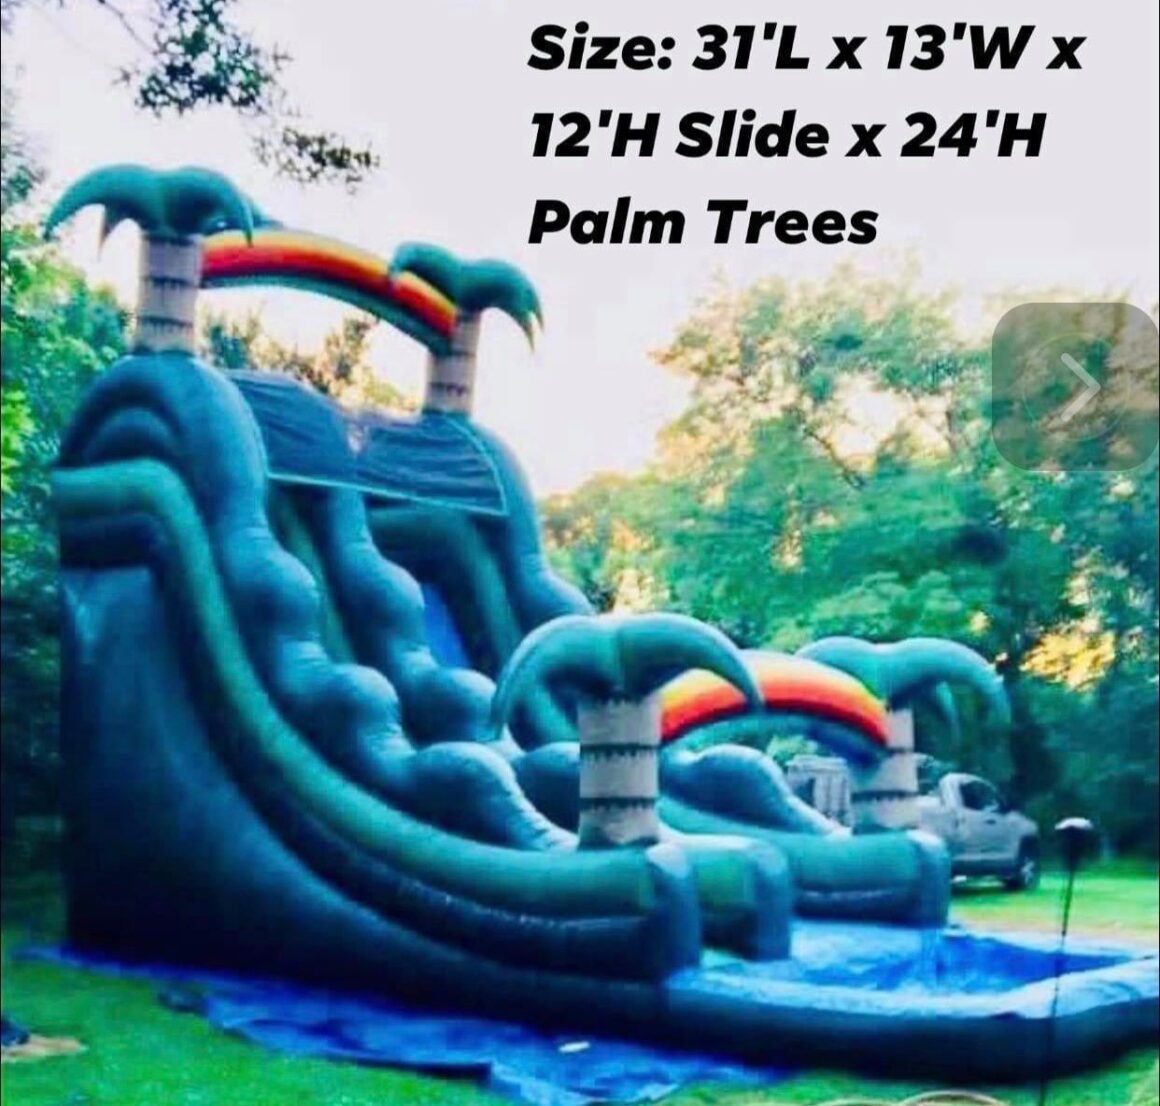 Palm Trees Size 31 L x 13 W x 12 H Slide x 24 H